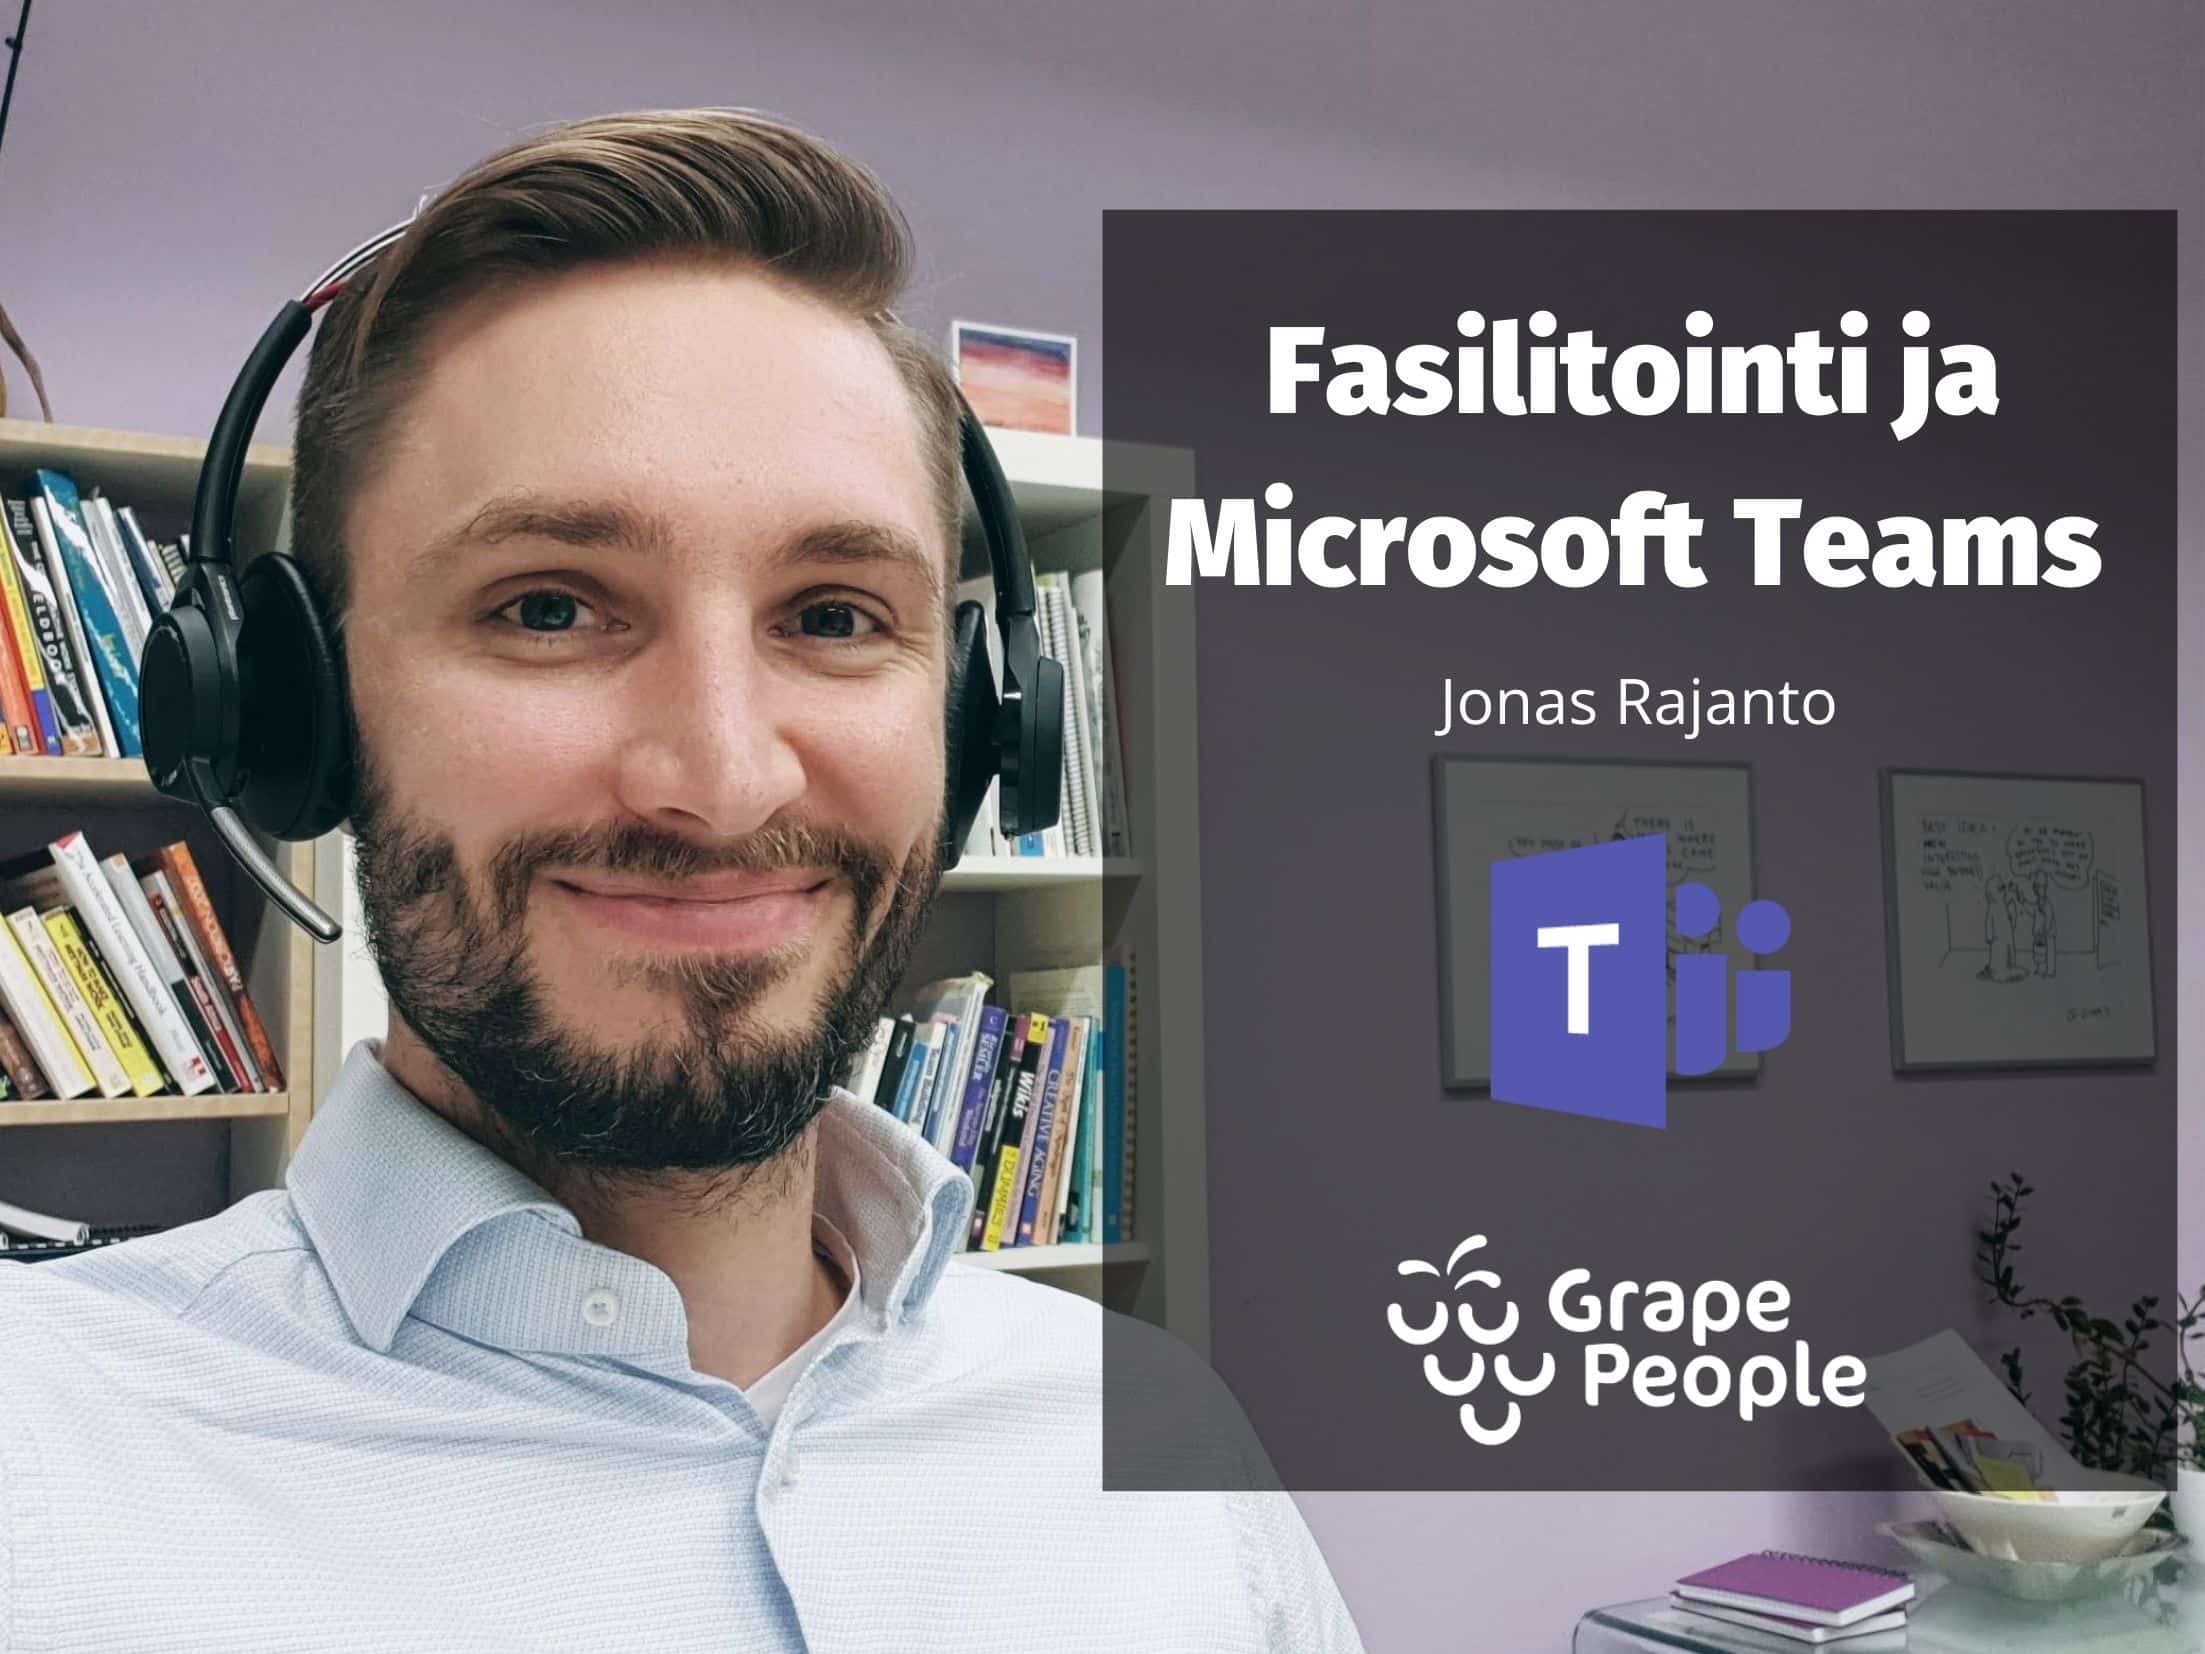 Fasilitointi ja Microsoft Teams